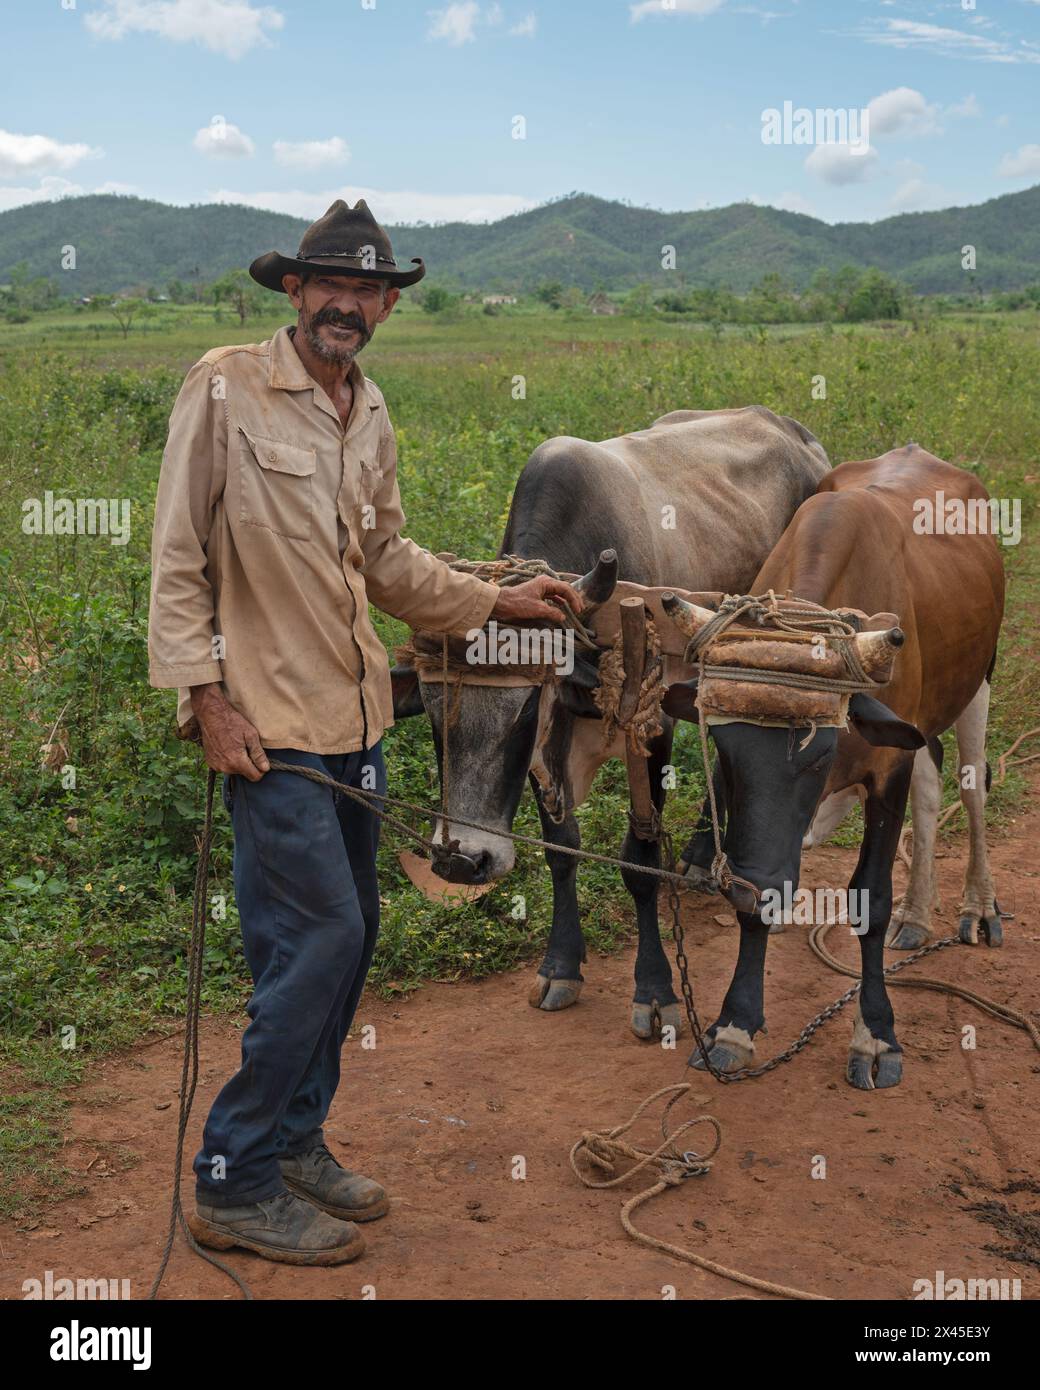 Un cultivateur de tabac se tenait avec une paire de bœufs dans un harnais devant sa maison avec une toile de fond du paysage karstique, près de Vinales, Cuba Banque D'Images